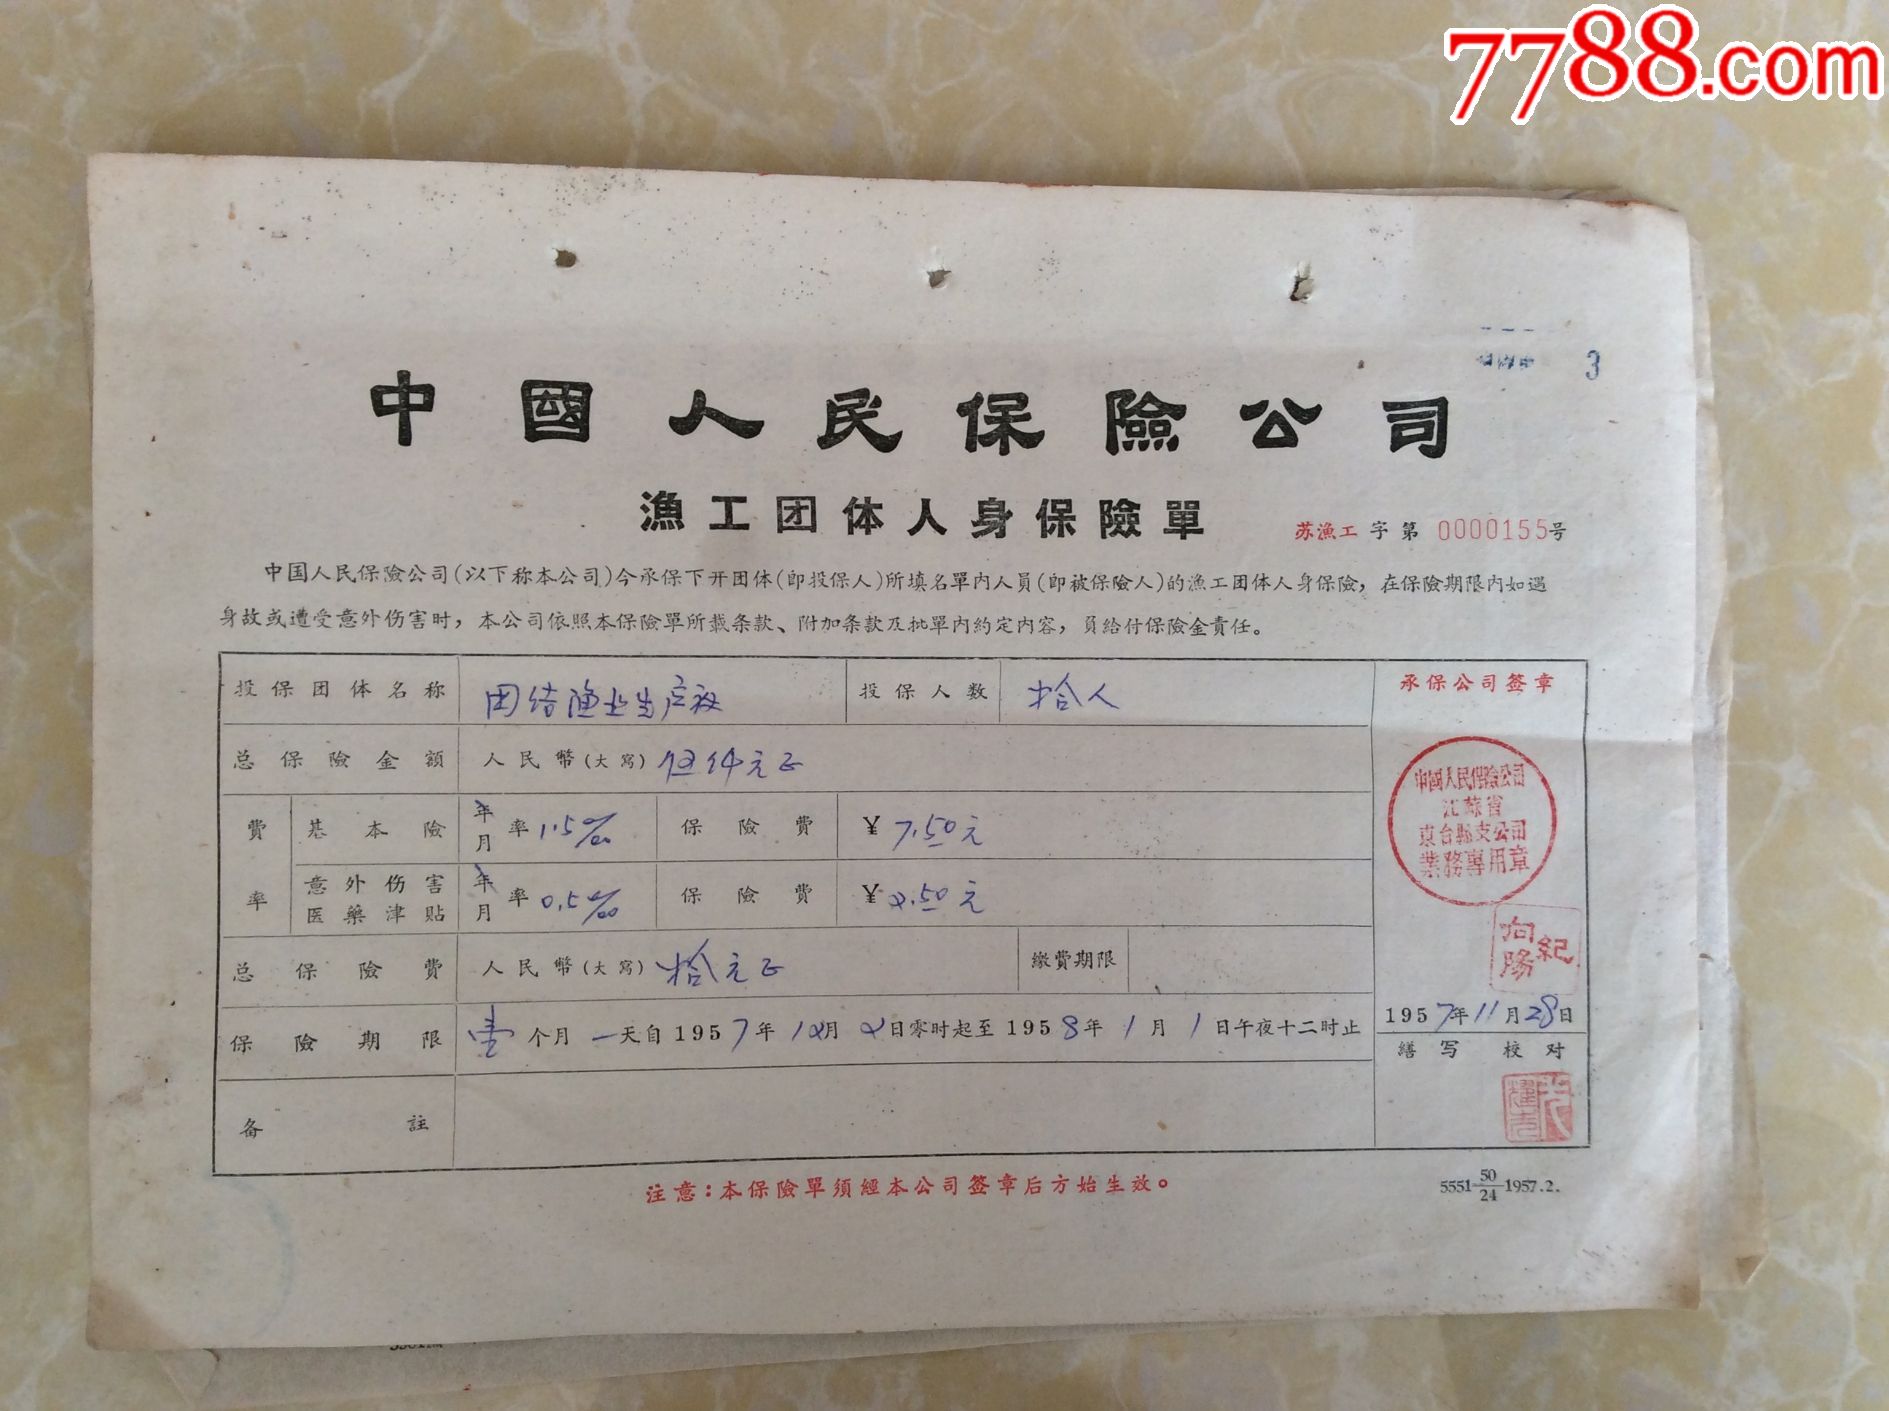 1957年中国人民保险公司渔工人身意外保险单仅见